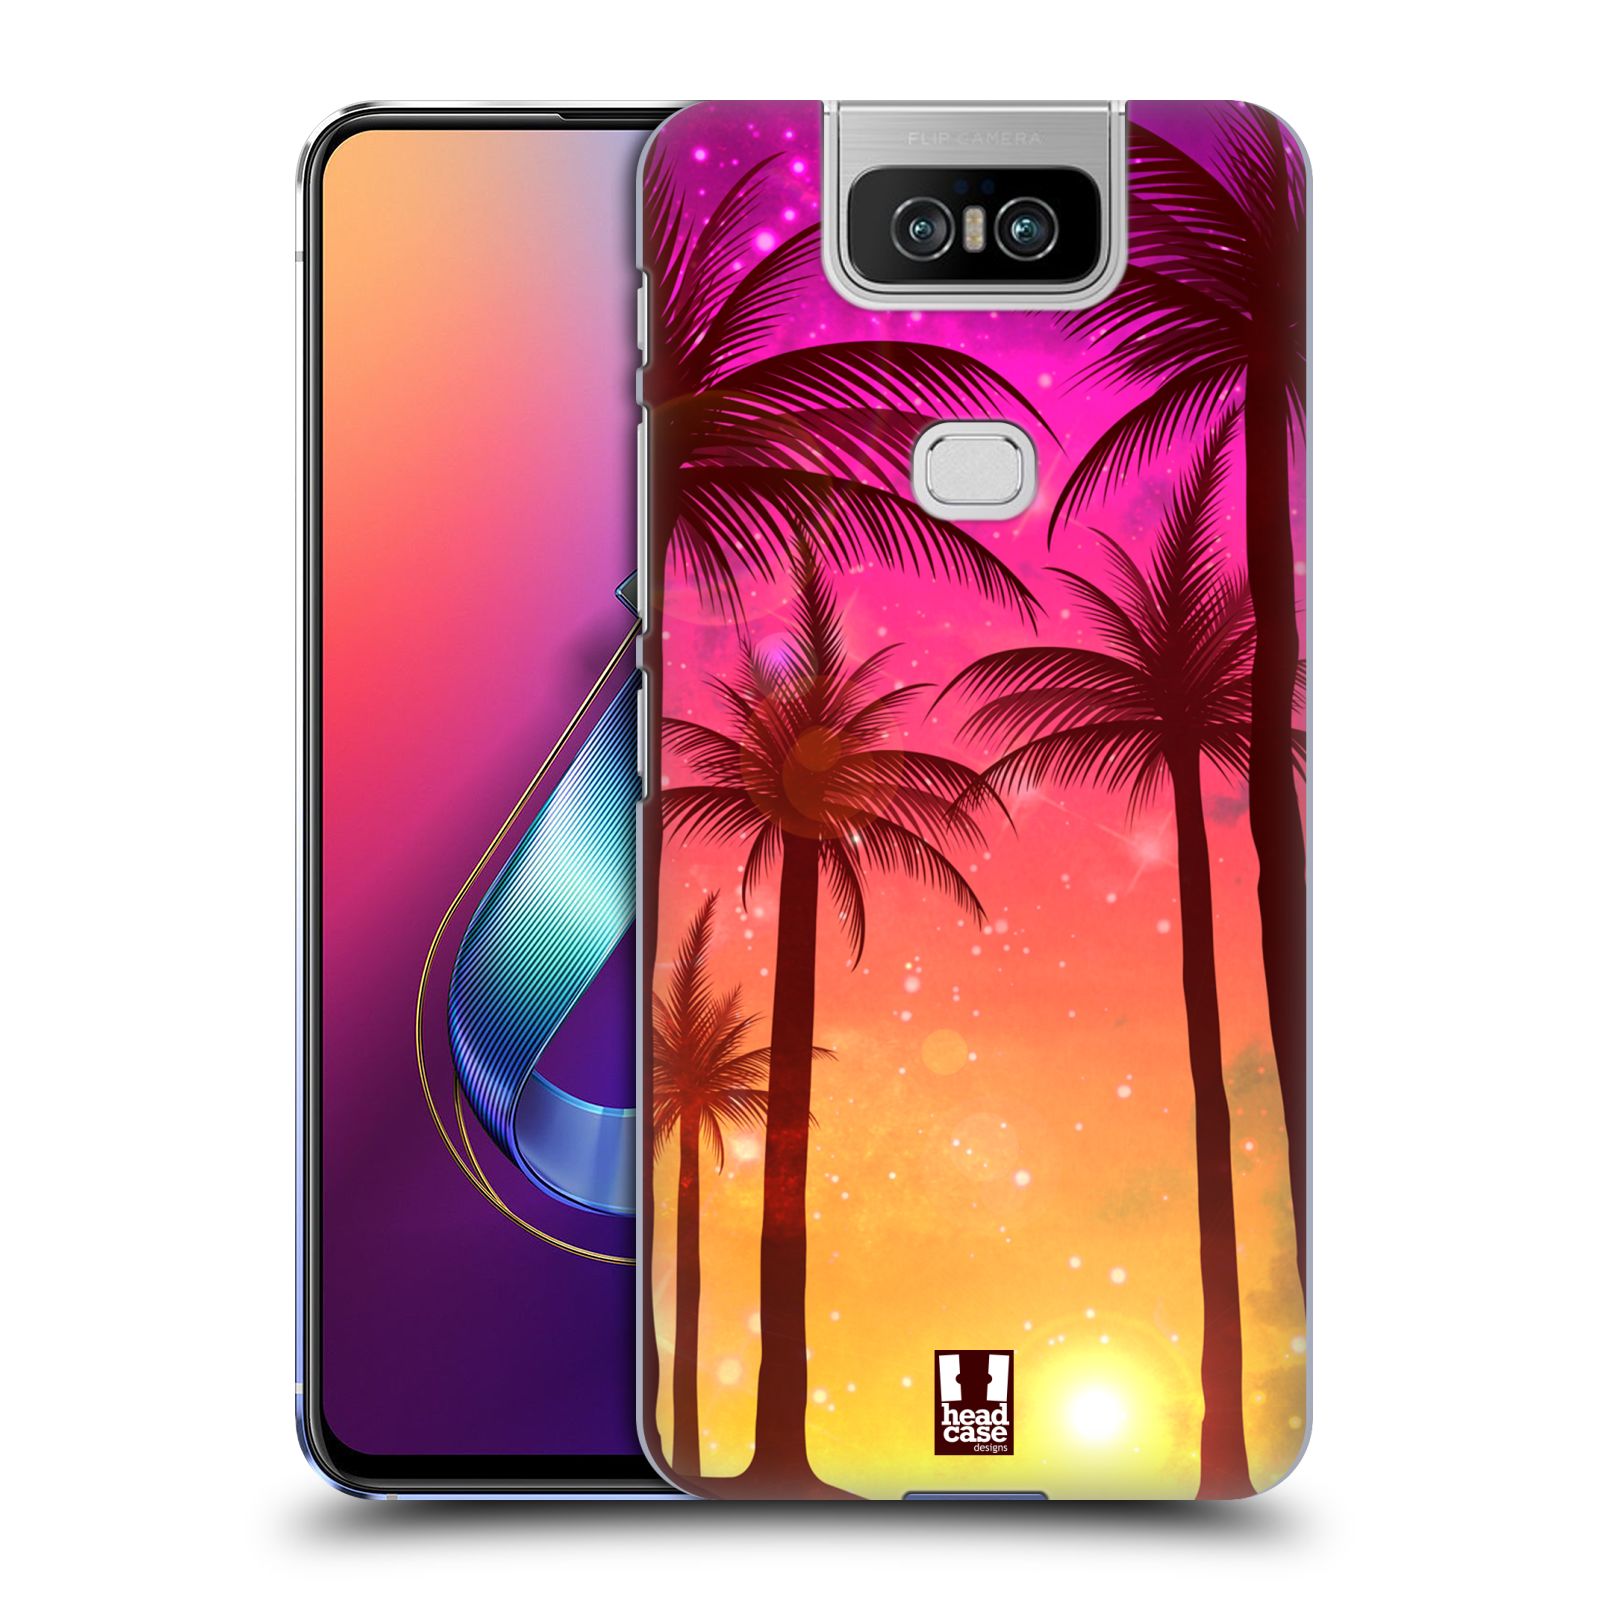 Pouzdro na mobil Asus Zenfone 6 ZS630KL - HEAD CASE - vzor Kreslený motiv silueta moře a palmy RŮŽOVÁ